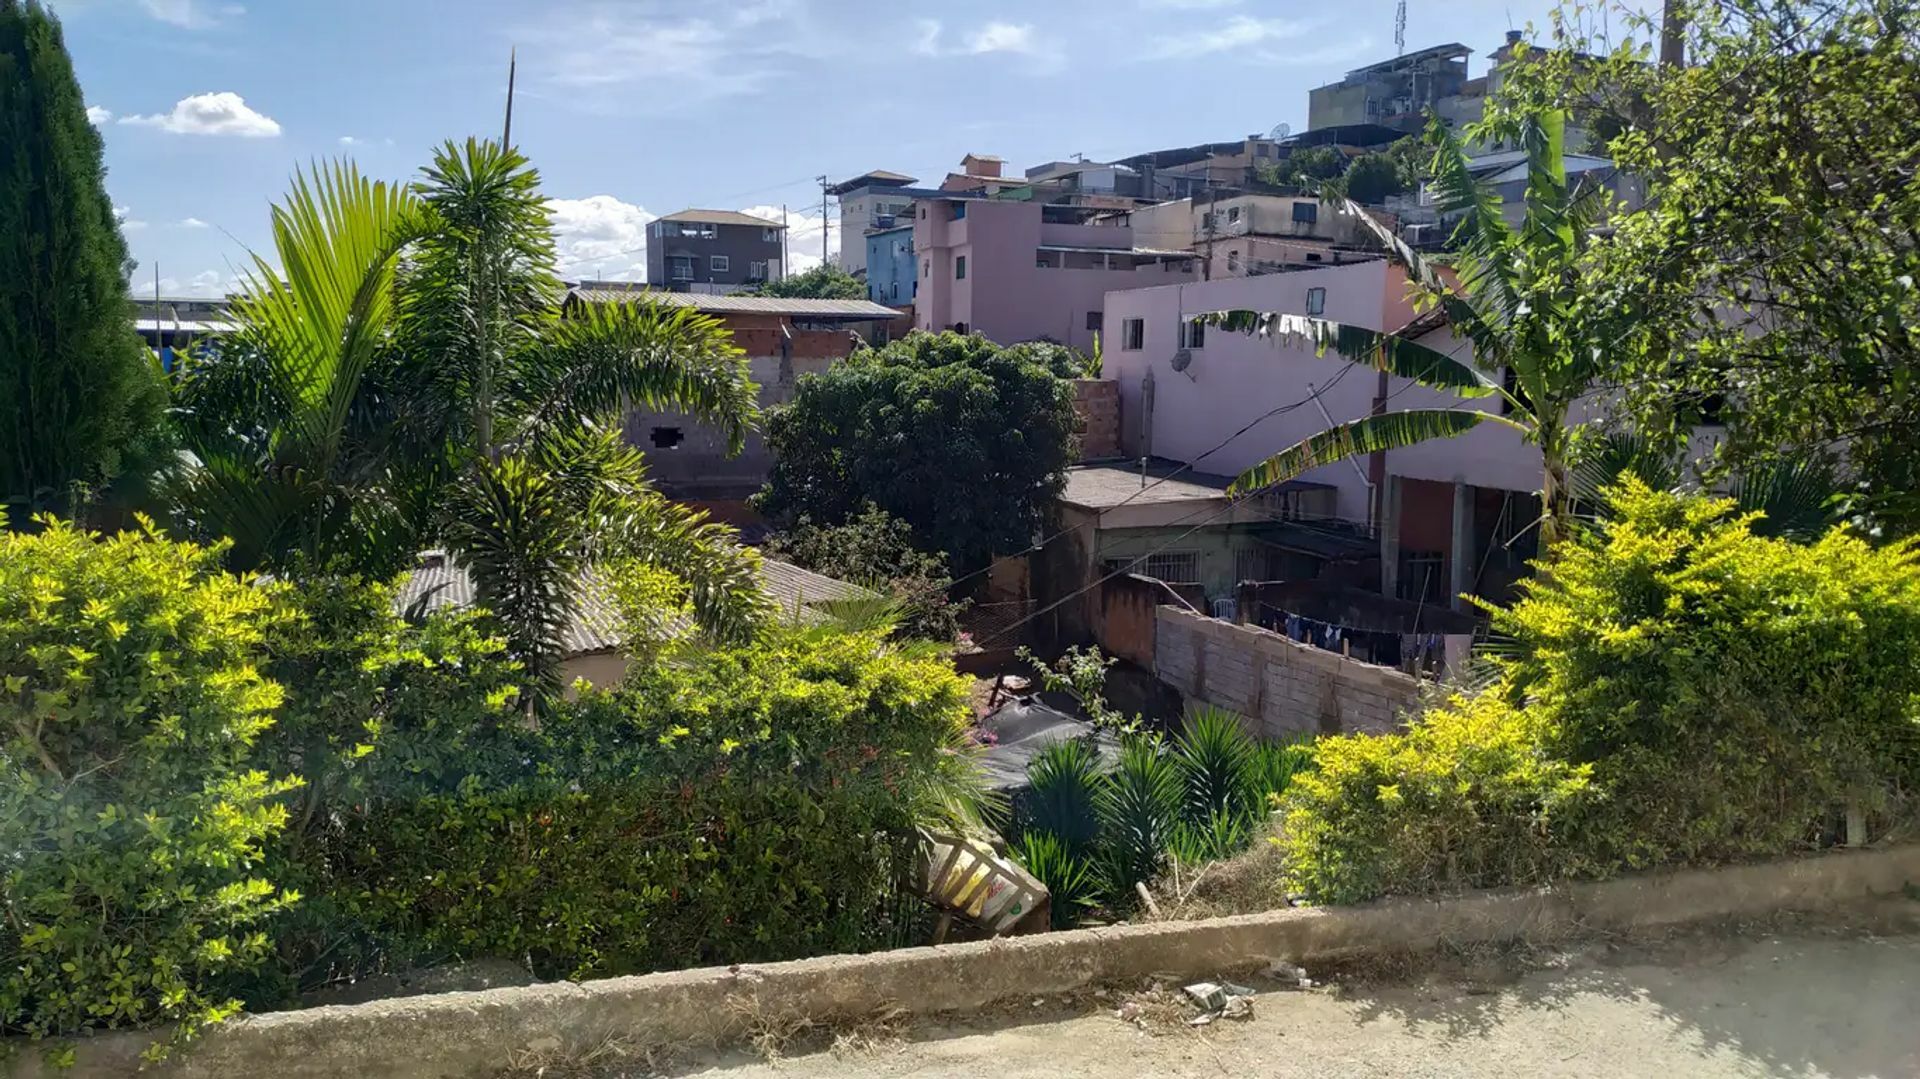 51 Casas para comprar em Sao Joao Del Rei/MG